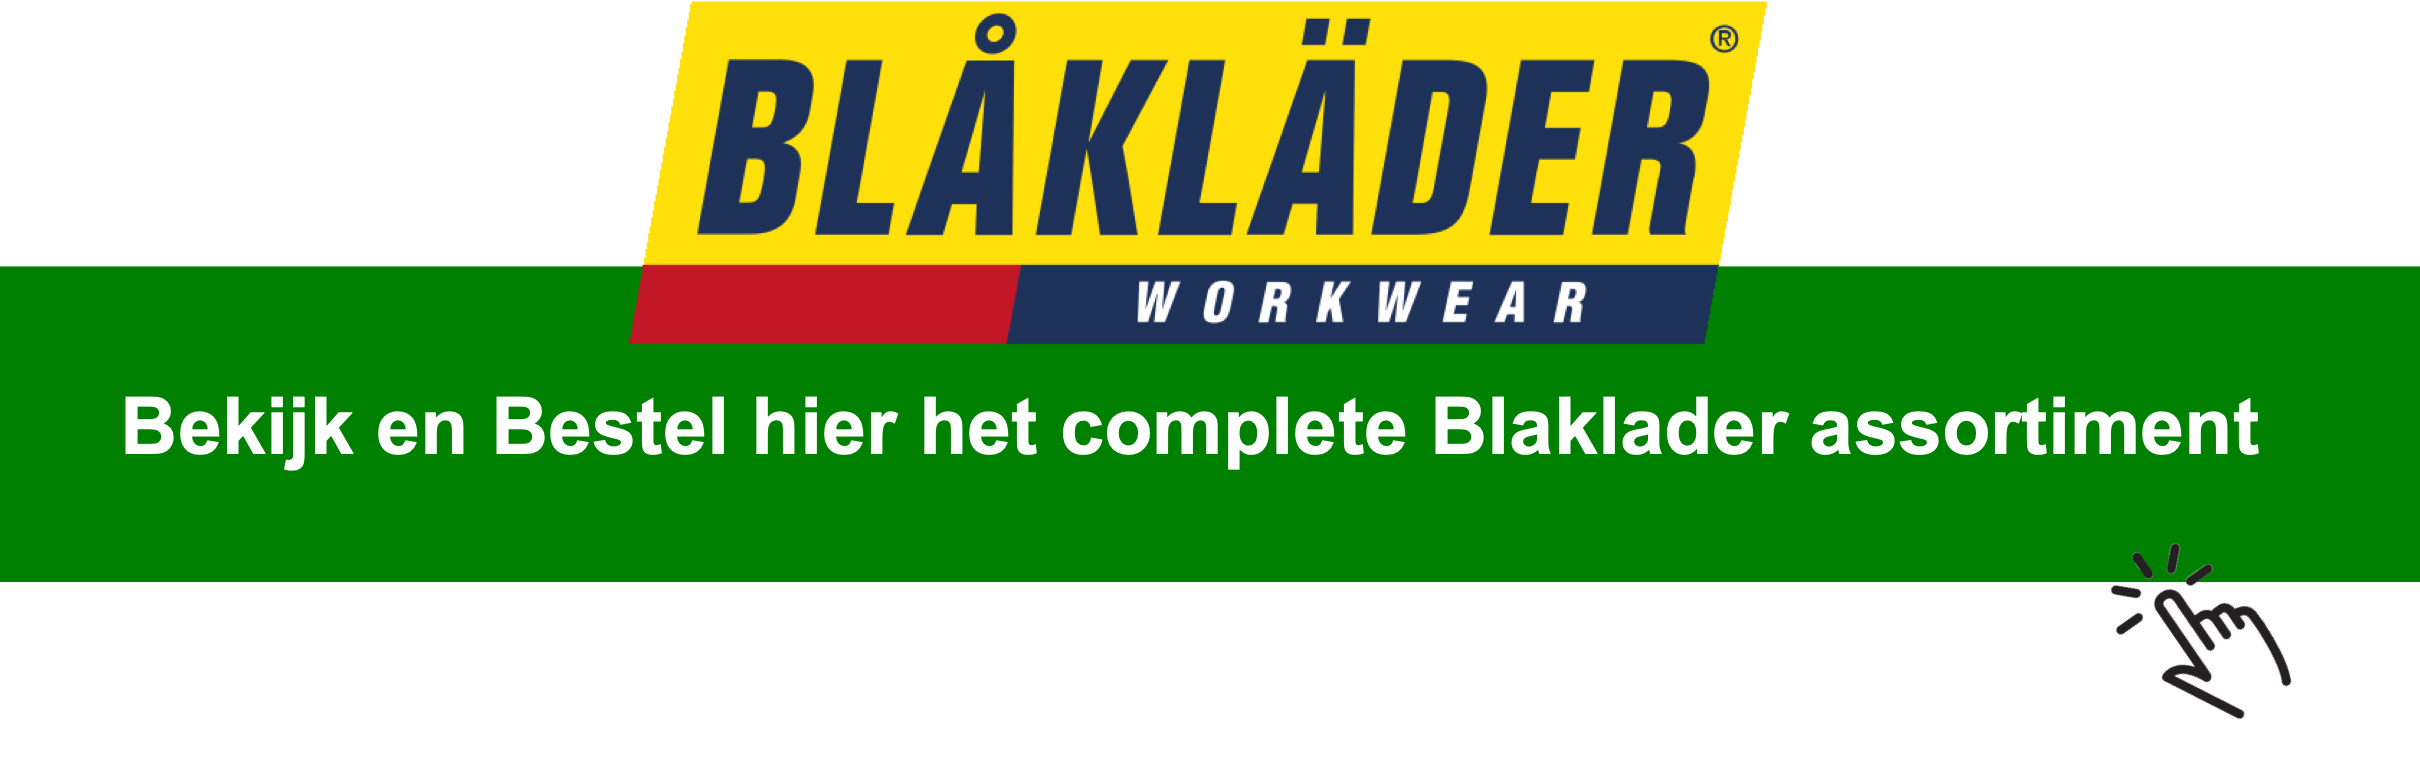 Blaklader werkkleding koopt u eenvoudig online bij 123werkschoenen.nl